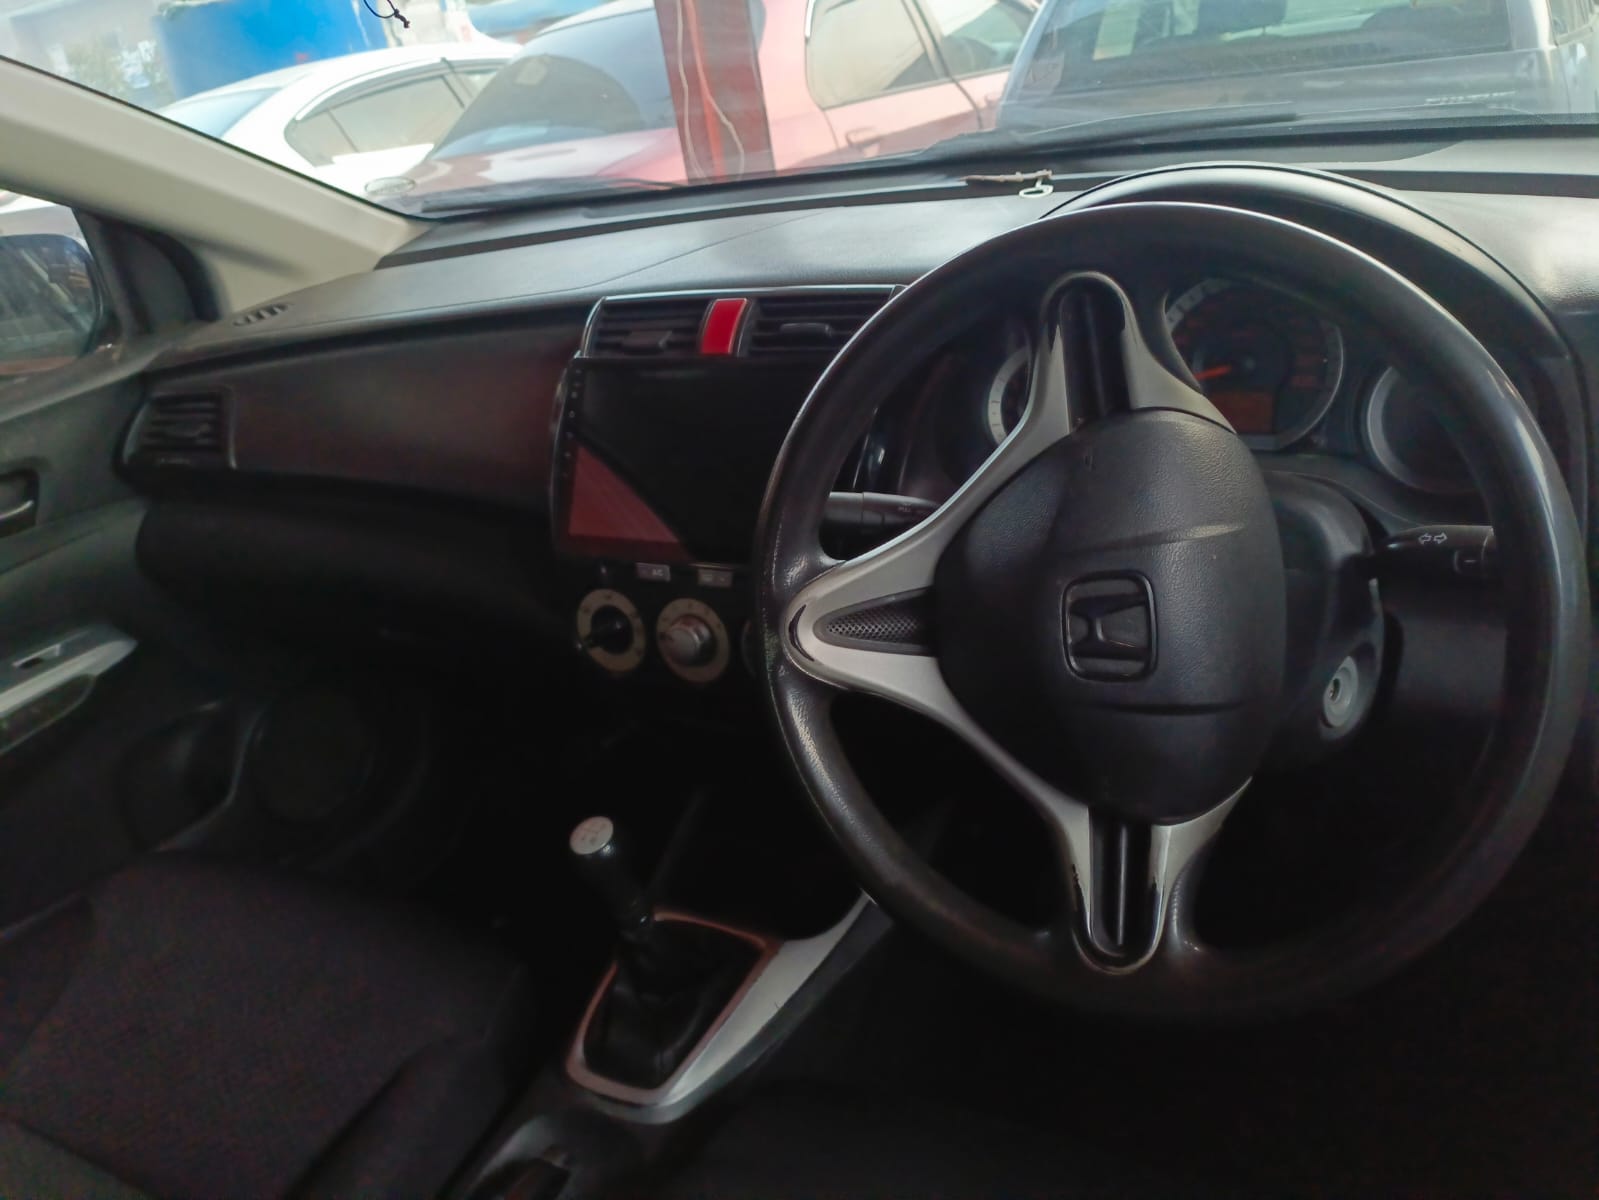 Honda Civic VTi Oriel 1.8 i-VTEC 2013 for Sale